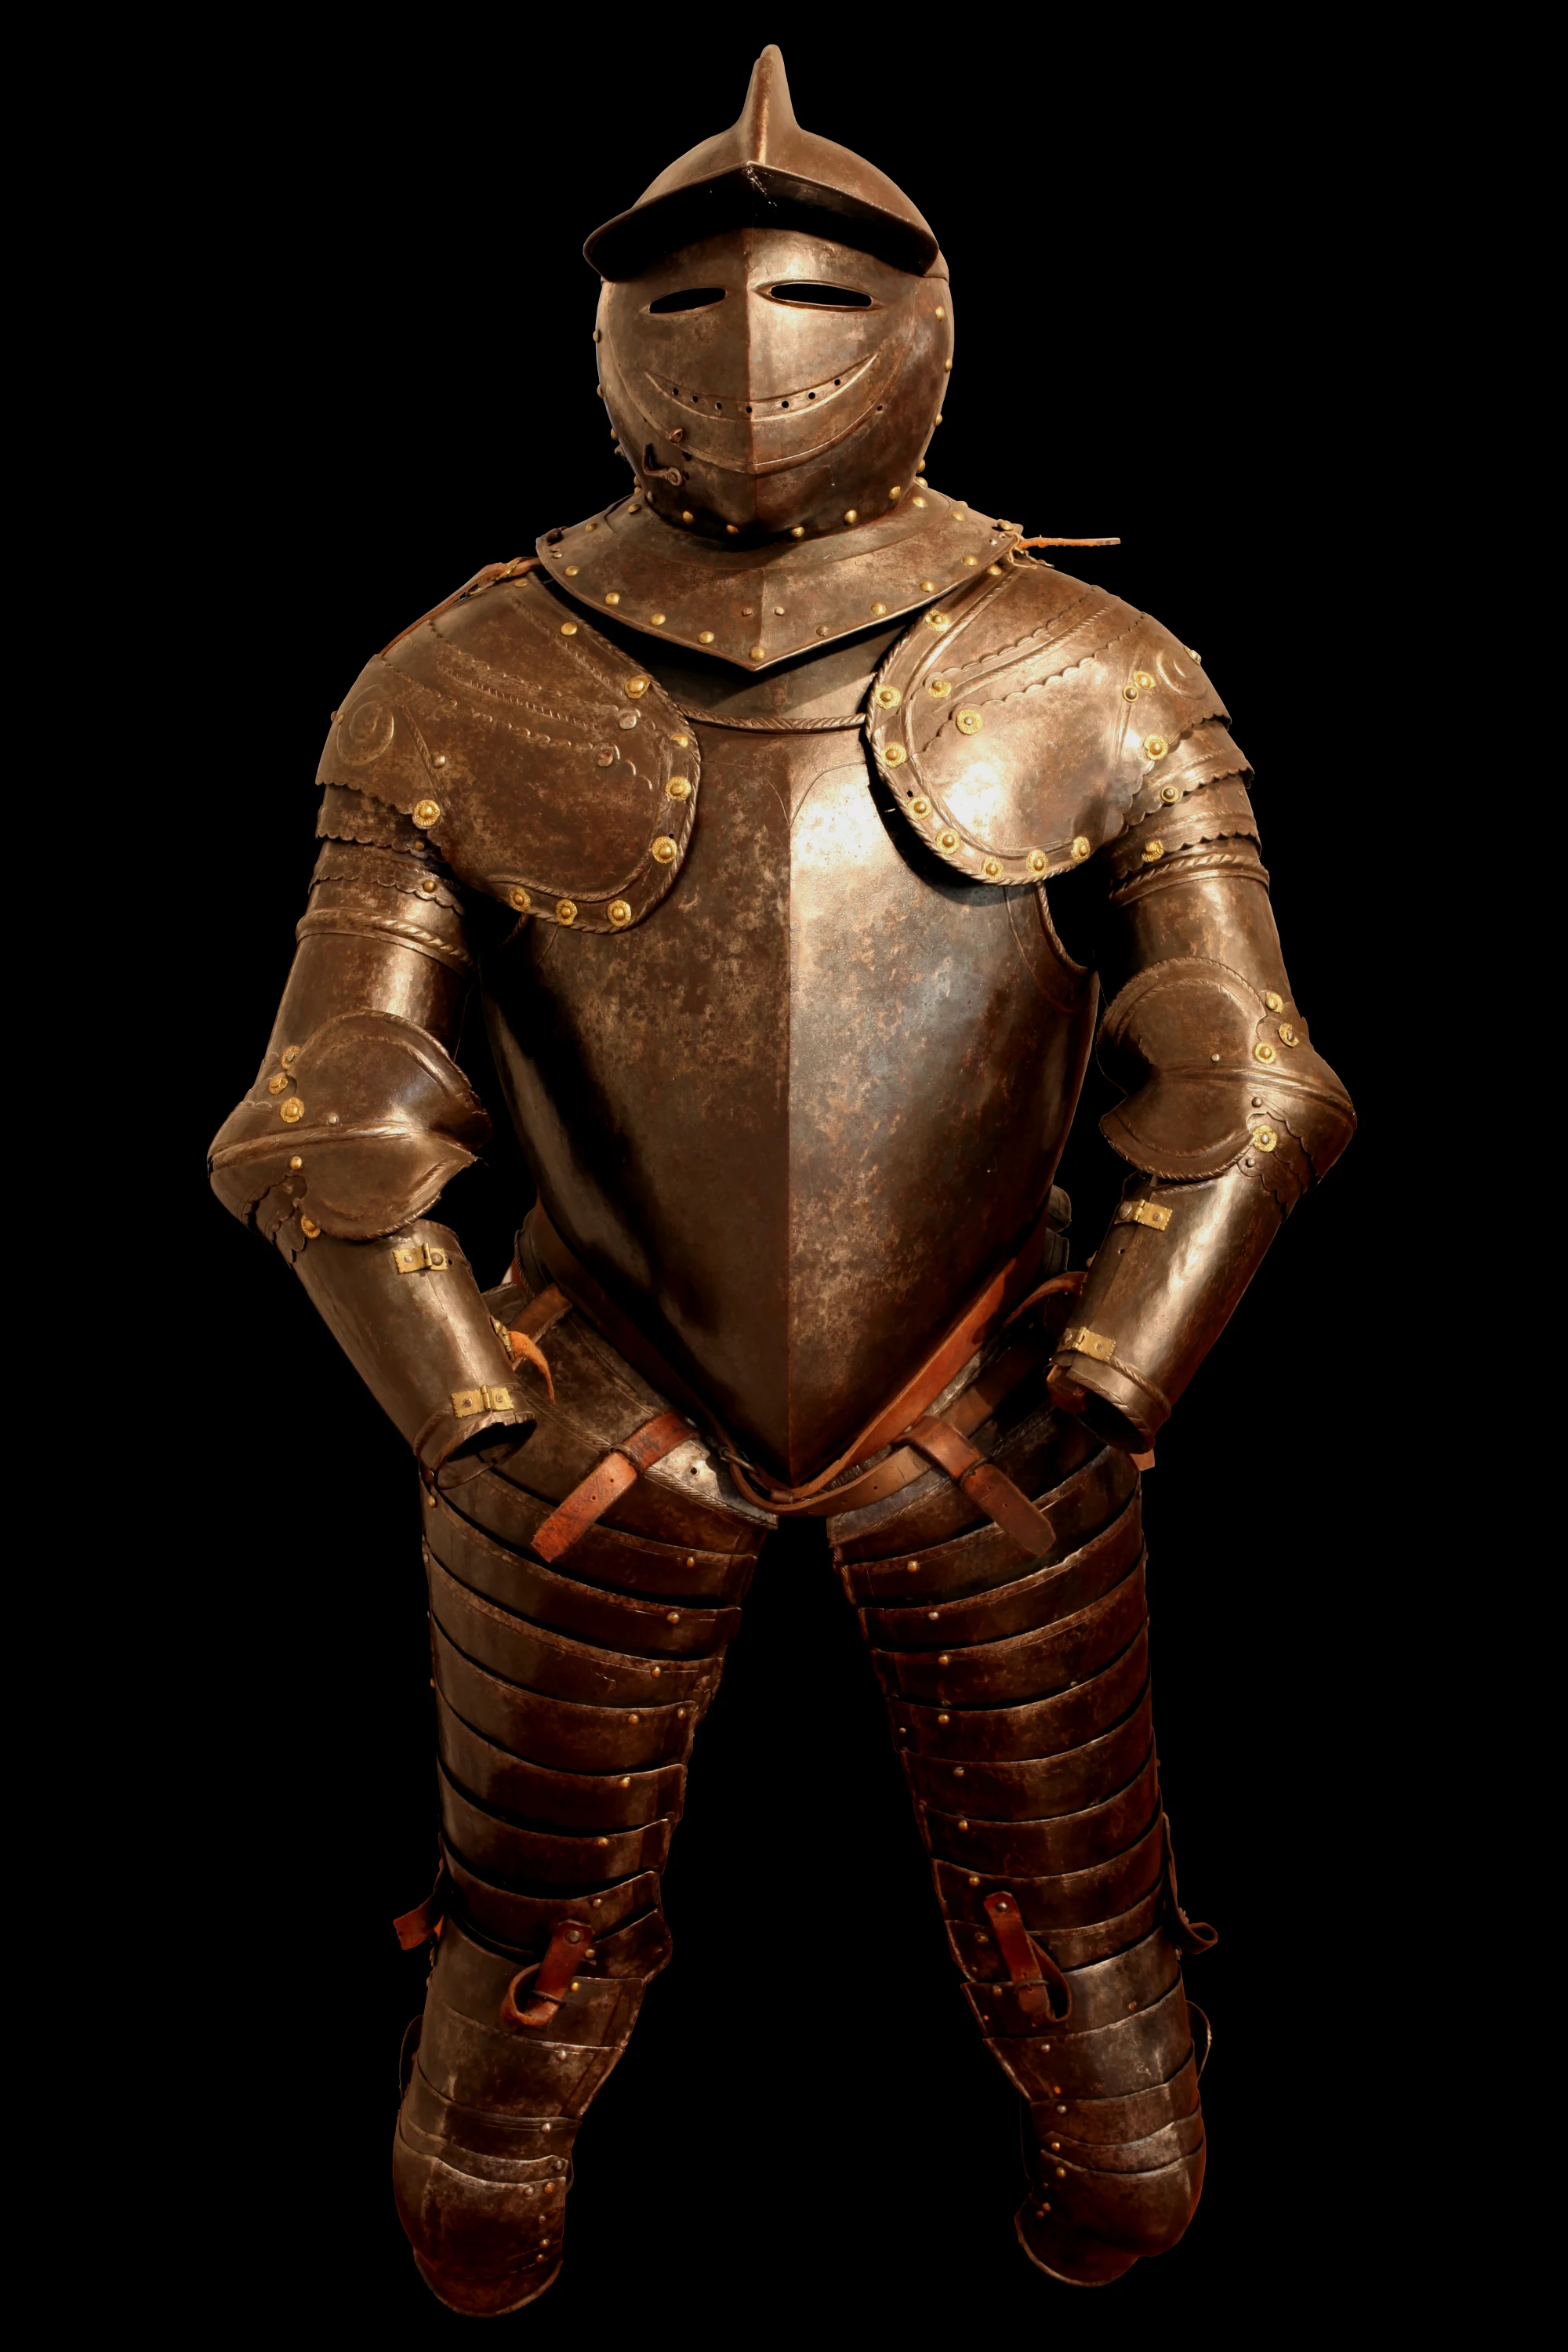 17世纪早期的胸甲骑兵用四分之三甲，这是一件大批量制造的盔甲，重量大概在32-45kg之间，厚度约有4mm（参考过去的全身板甲一般是1-2mm，而四分之三甲是这个的2倍）